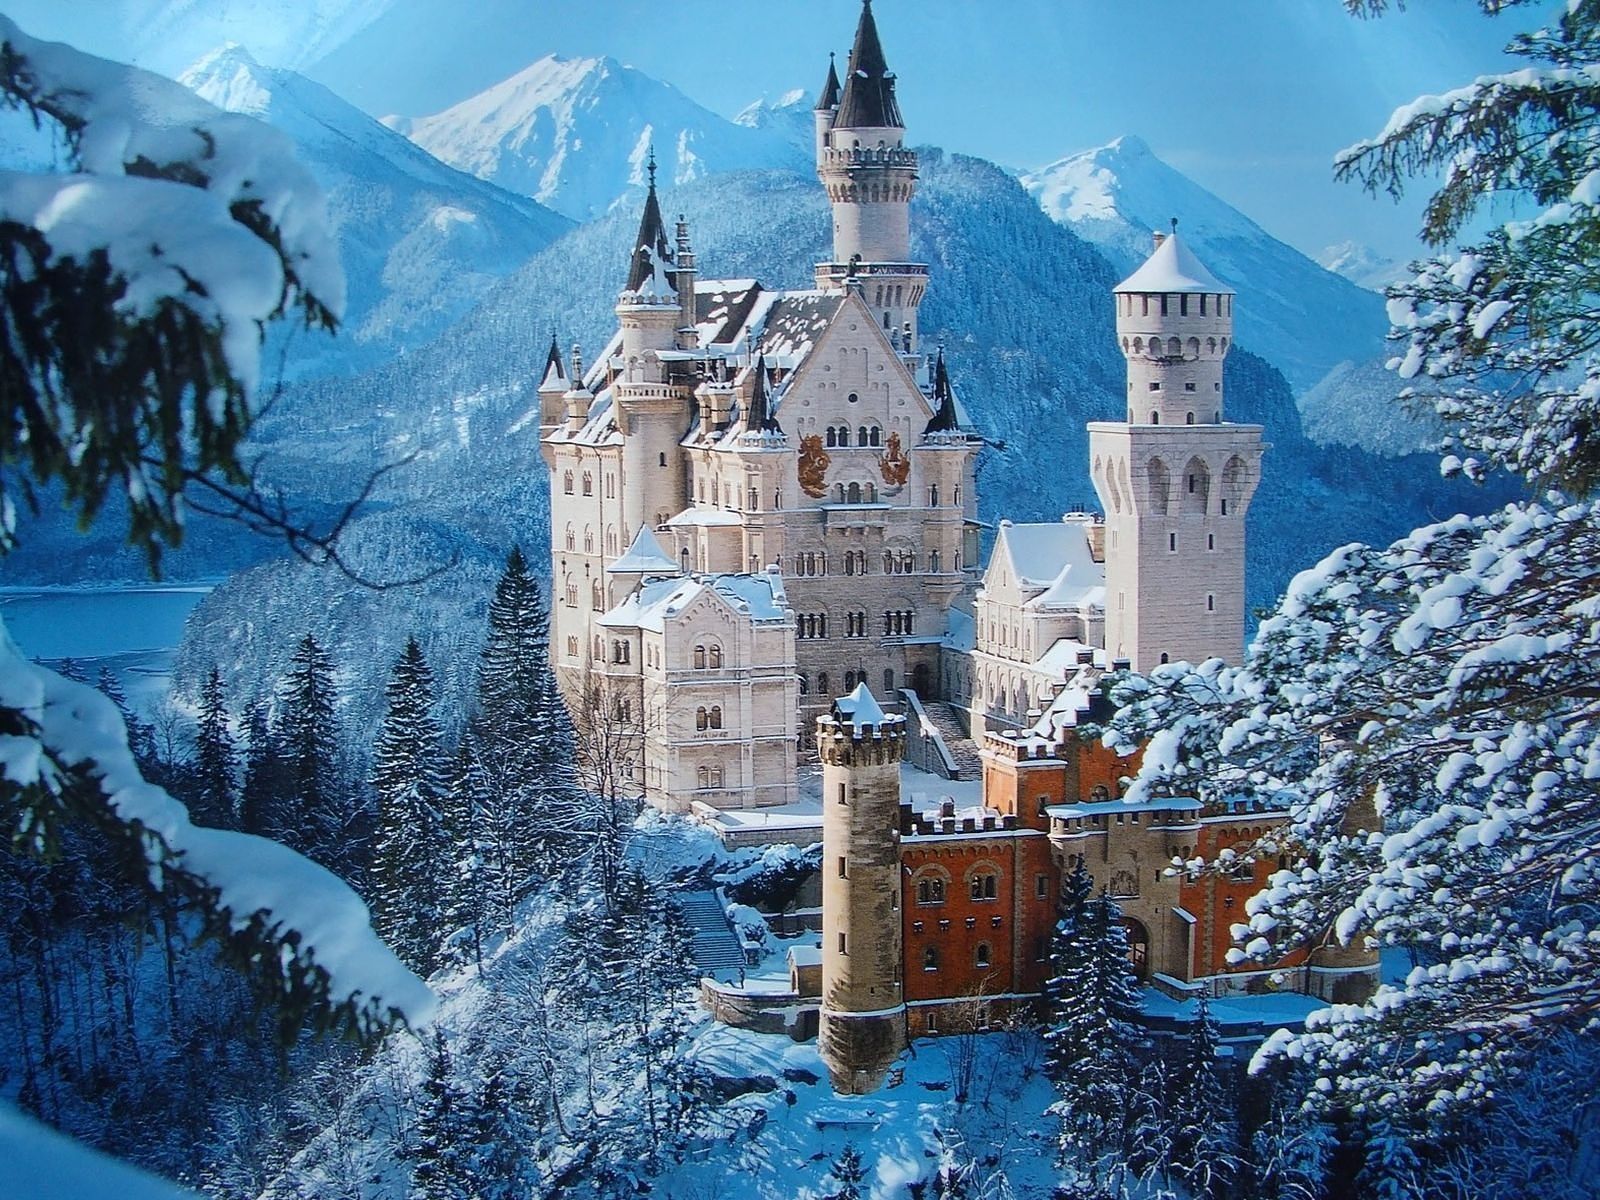 Winter Wonderland. Winter wonderland castle Winter wonderland castle